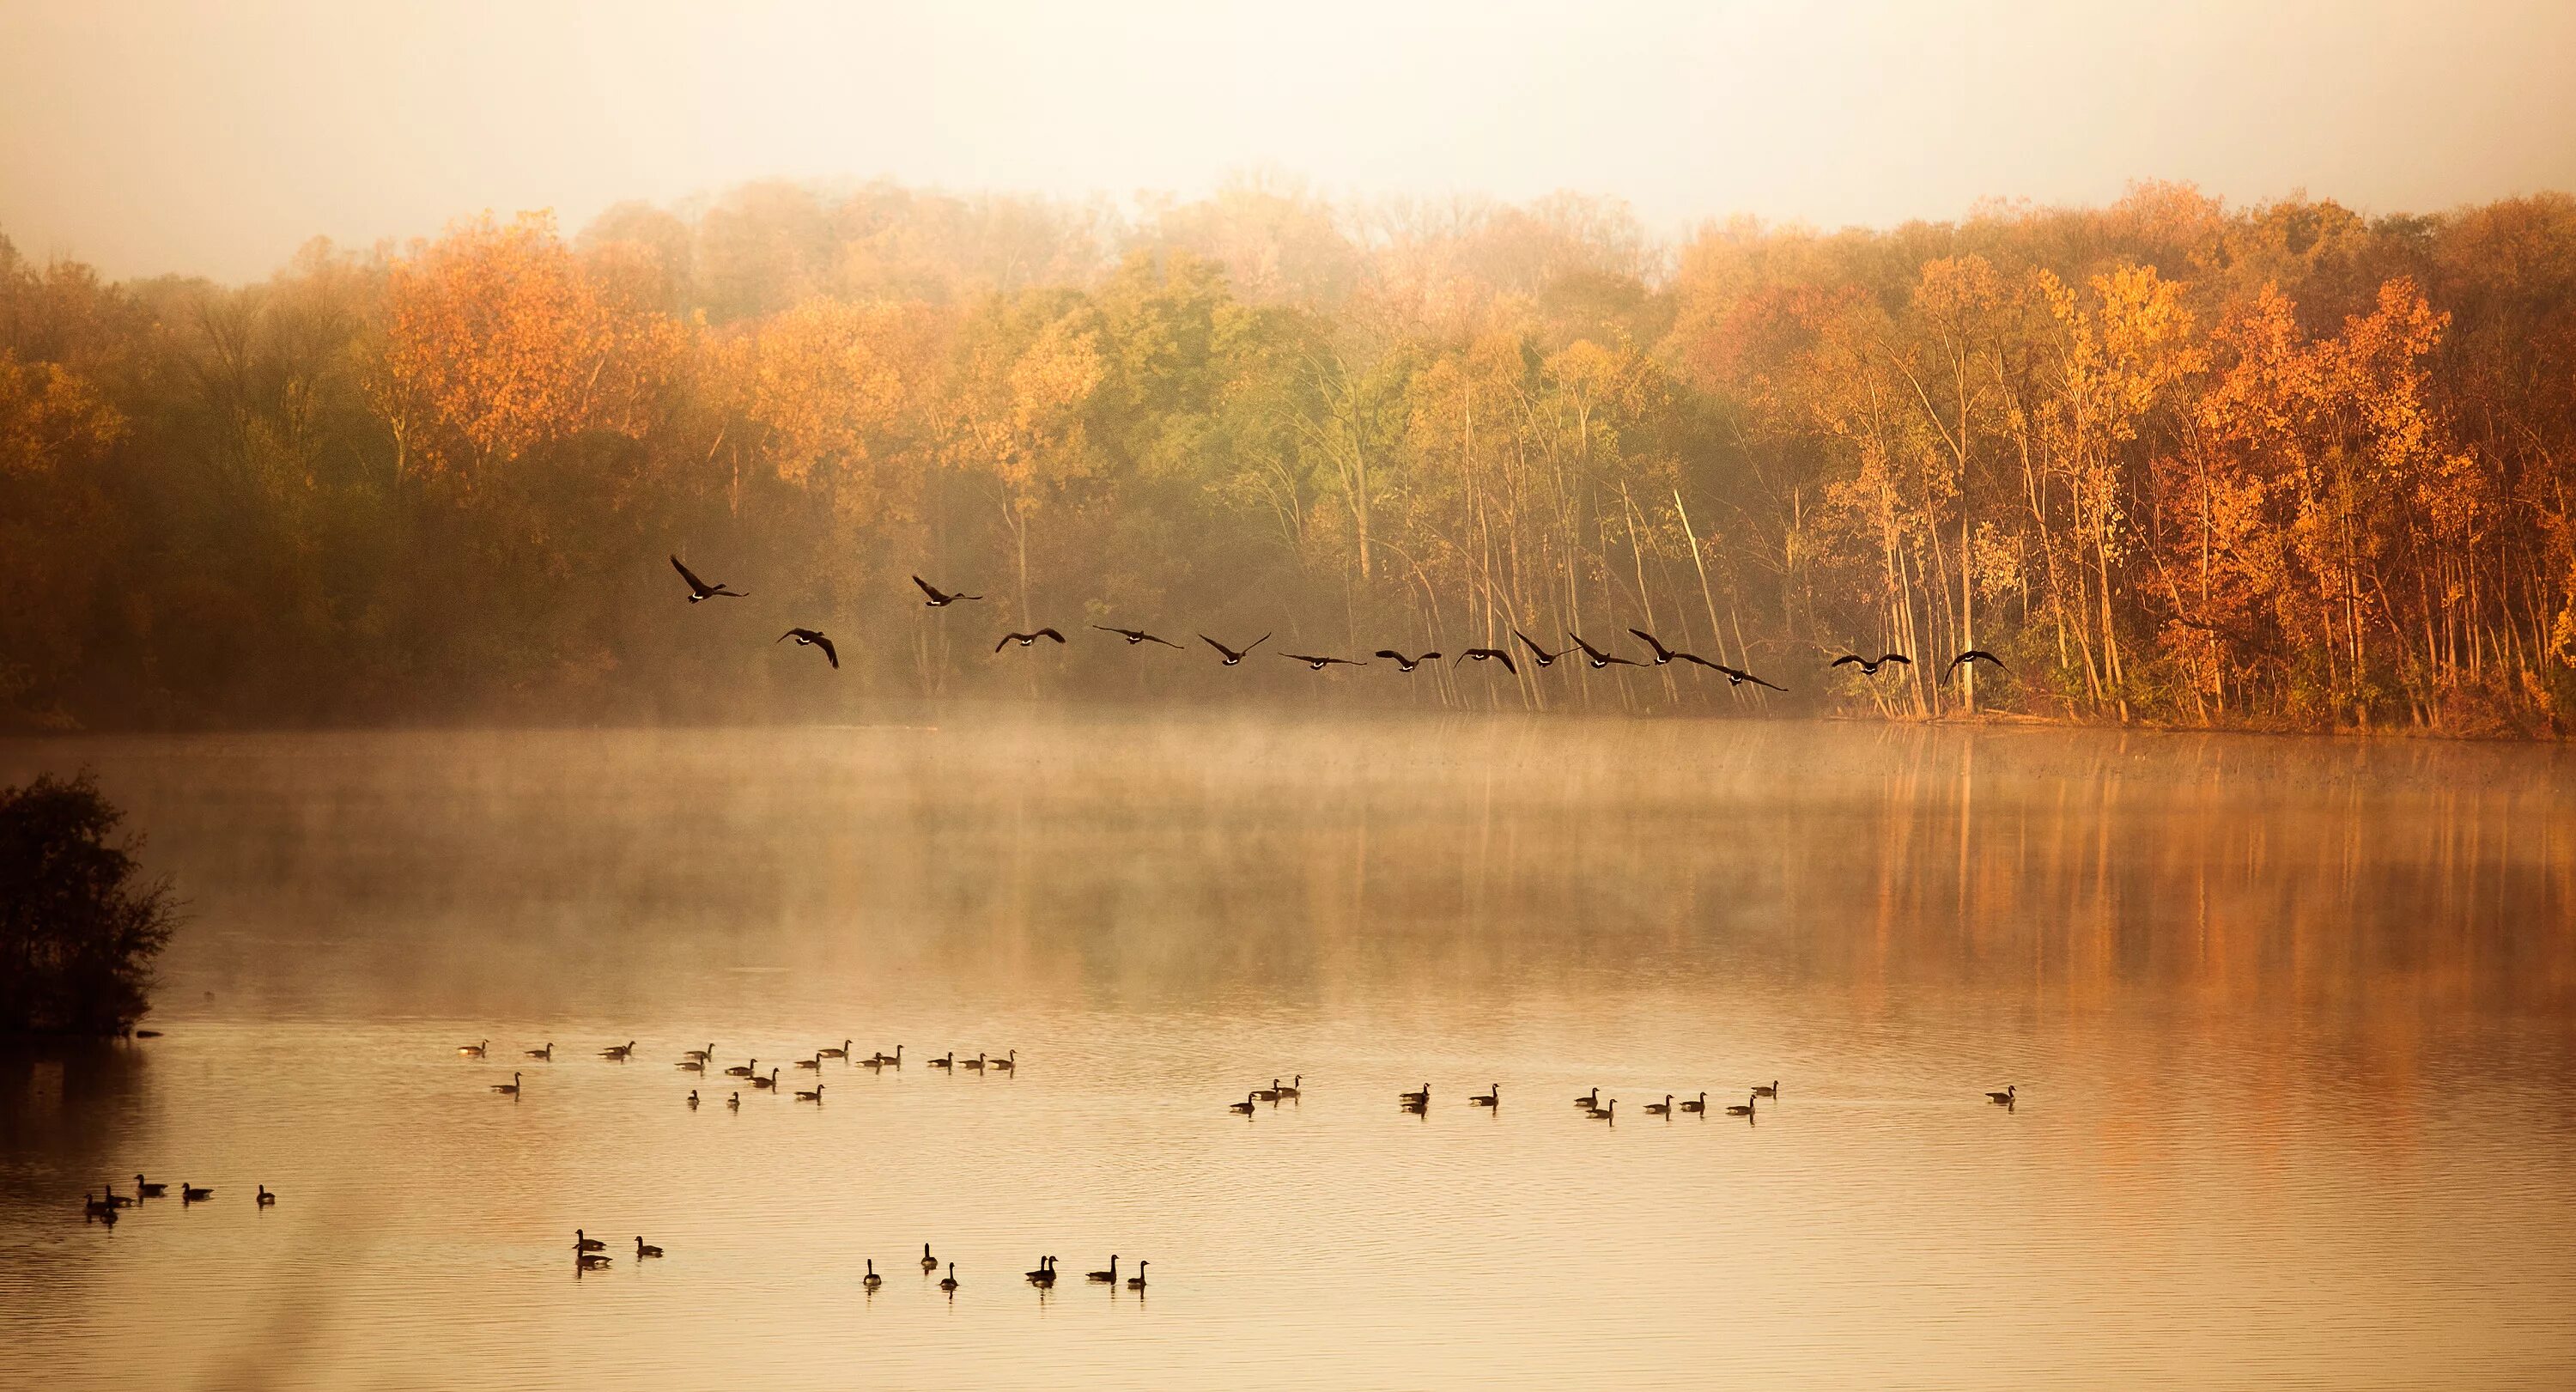 Гусей крикливых караван. Осень птицы улетают. Осенний пейзаж с журавлями. Птицы улетают на Юг. Птицы в тумане.